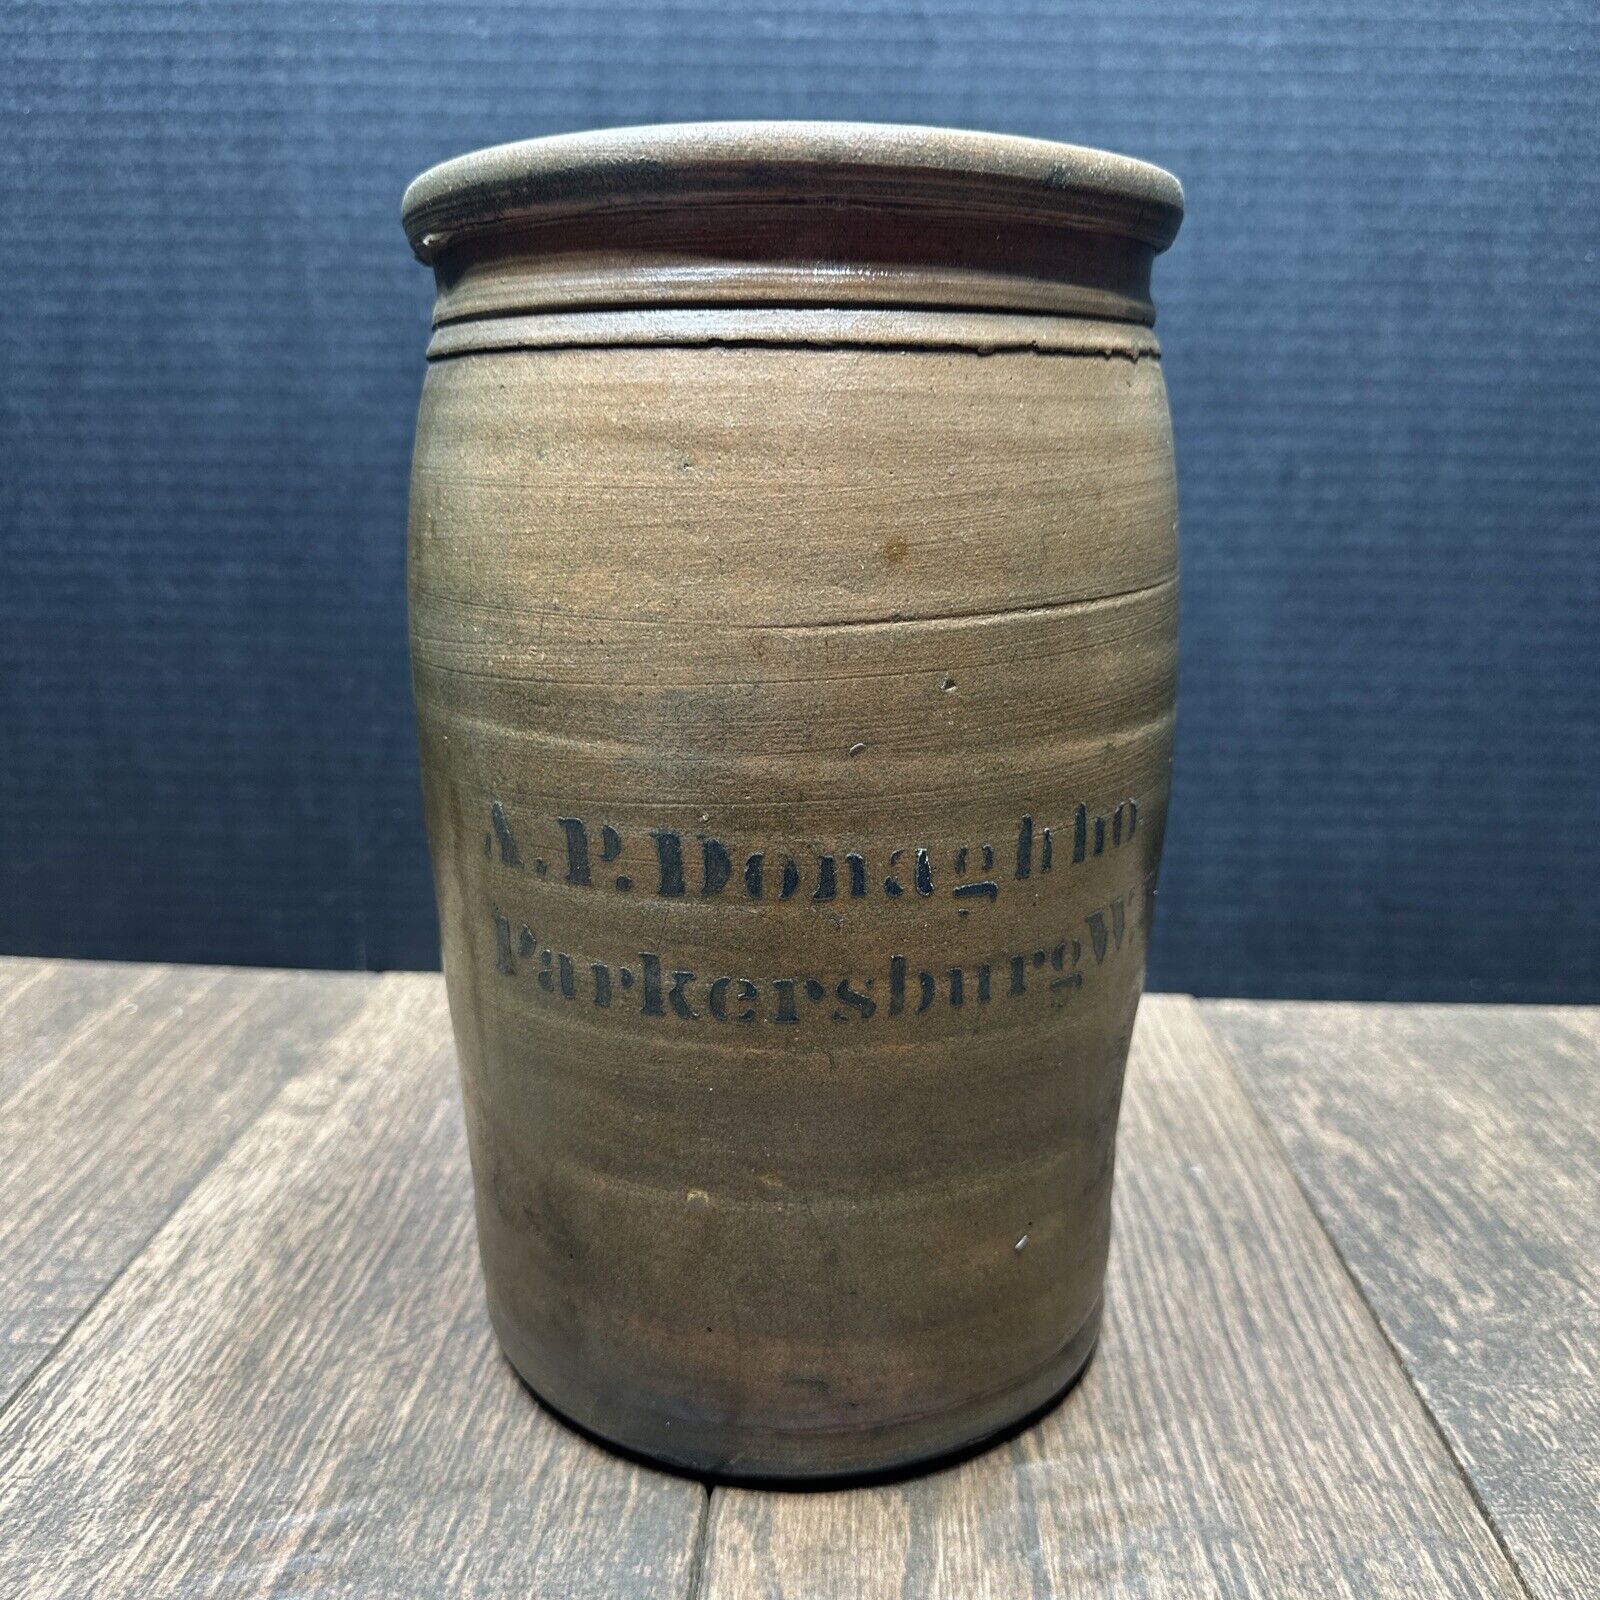 Vintage A.P. Donaghho Parkersburg West Virginia Salt Glazed Stoneware Jar